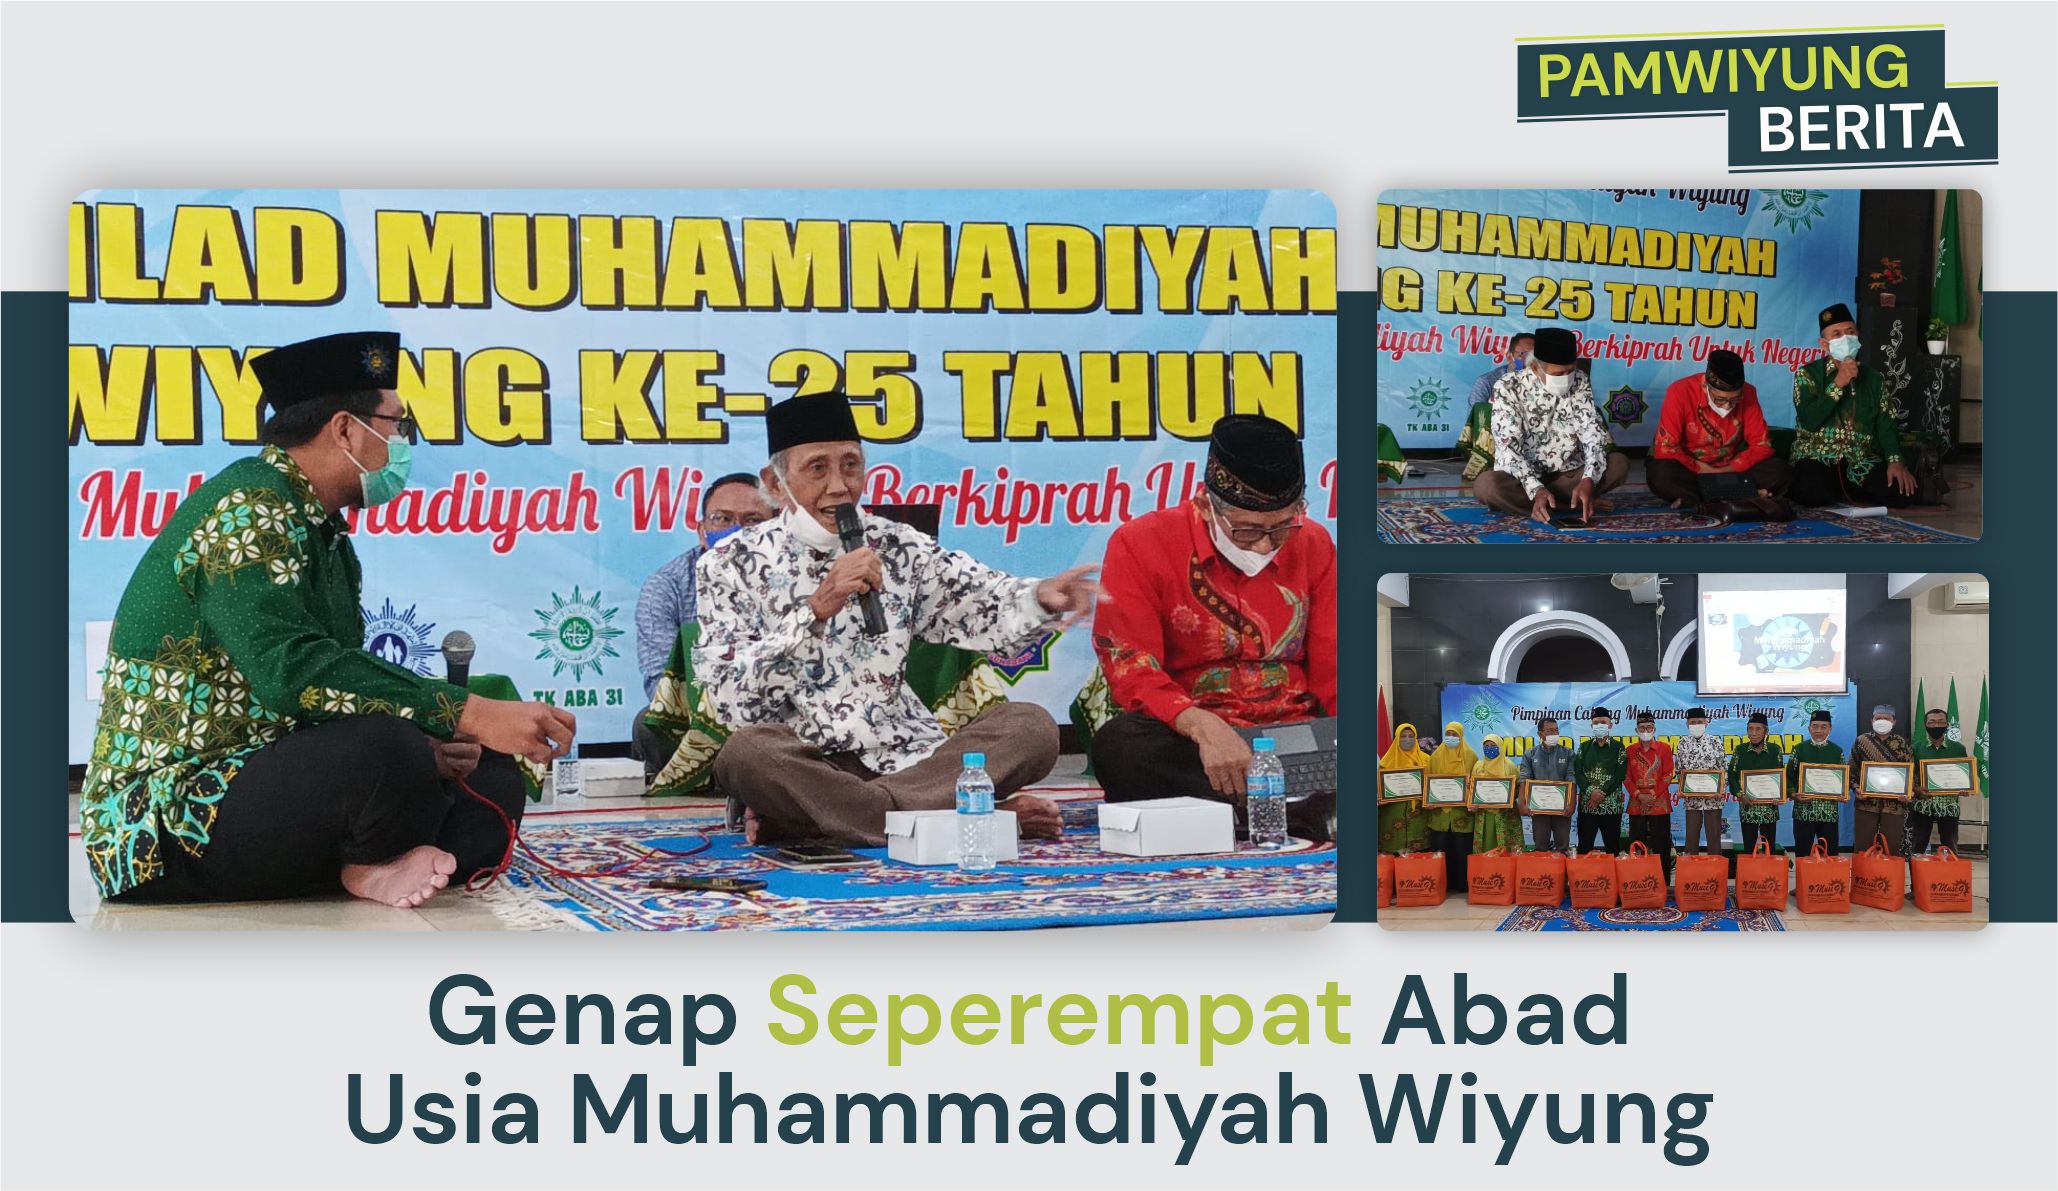 Genap Seperempat Abad Usia Muhammadiyah Wiyung